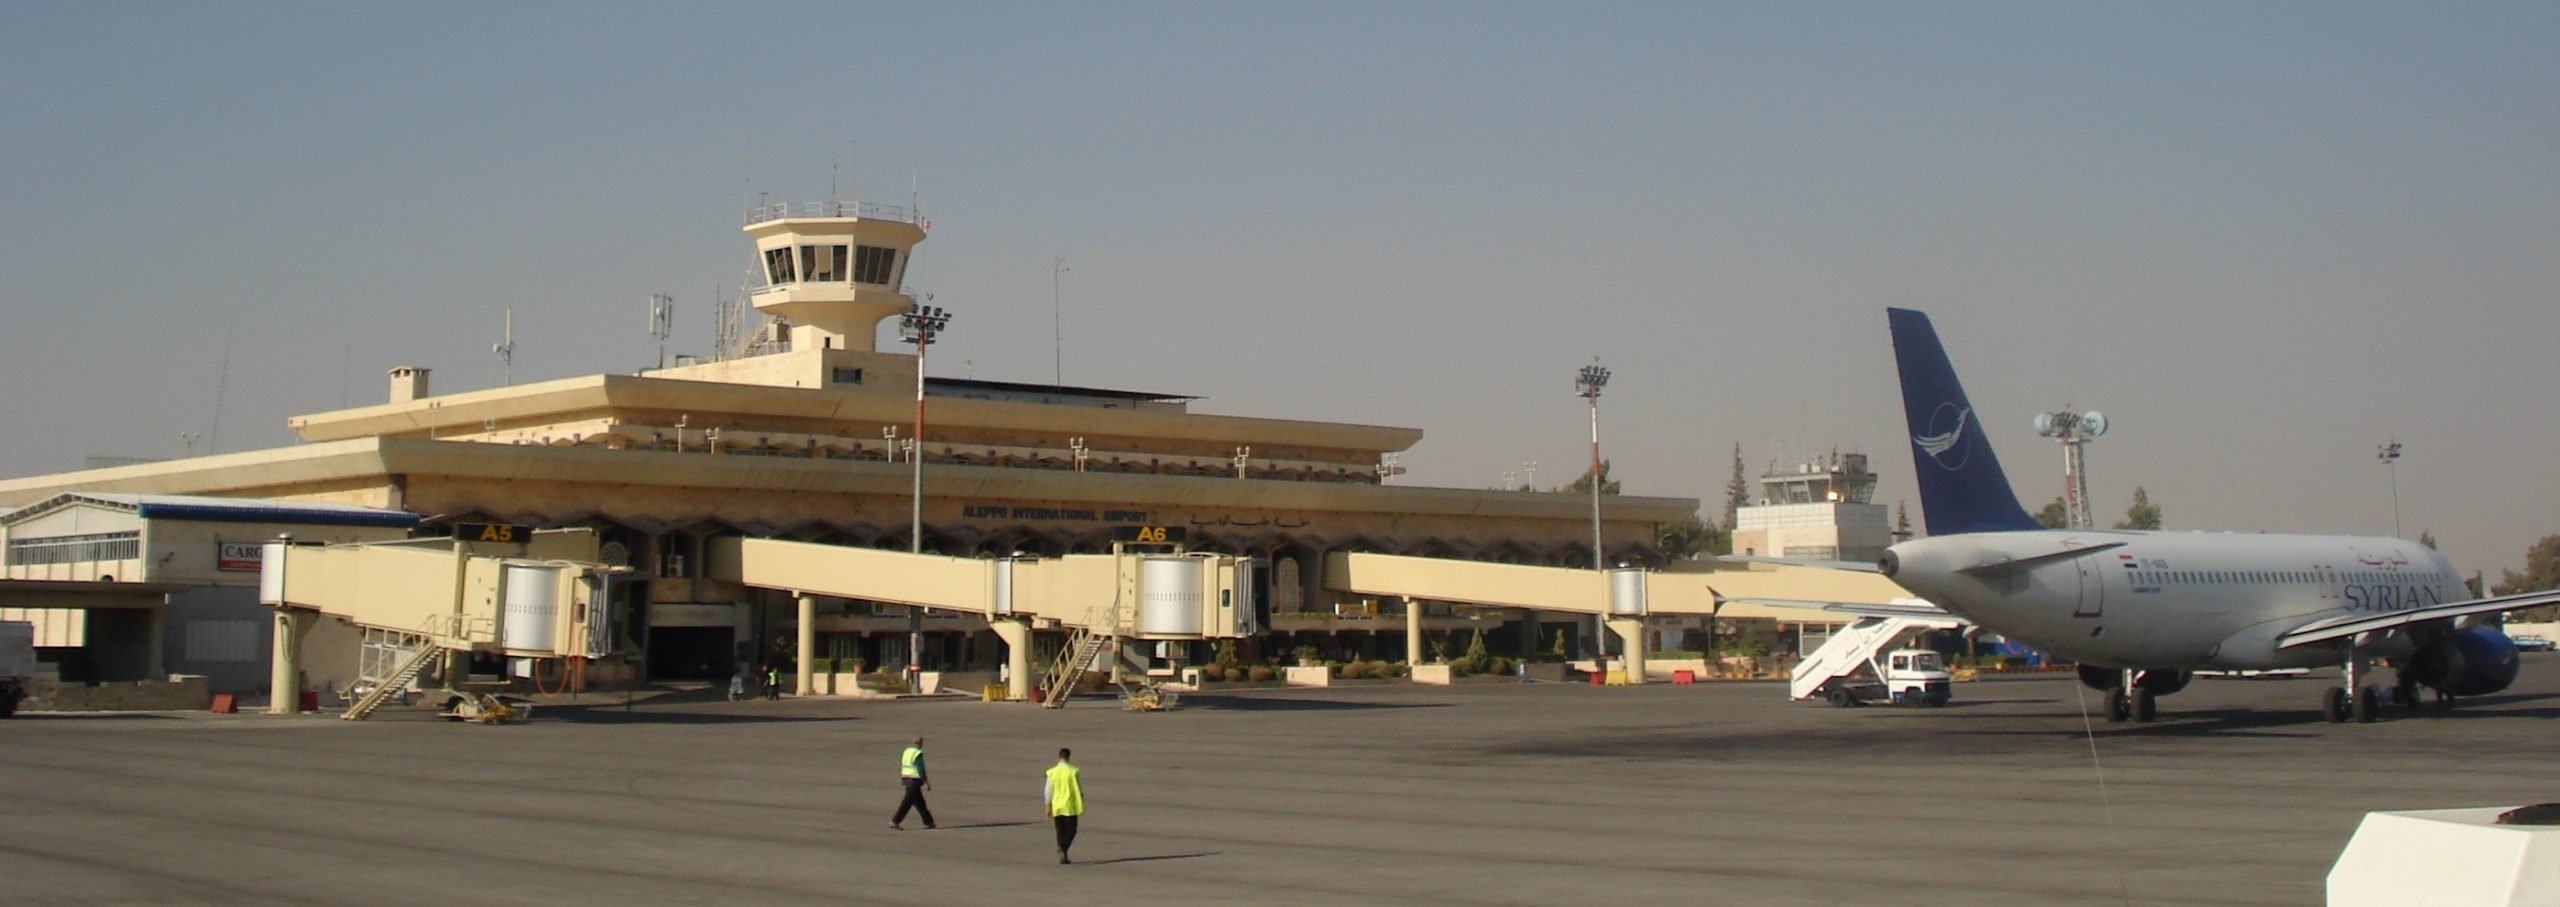   إعادة تشغيل مطار حلب الدولي.. بعد توقفه 9 سنوات